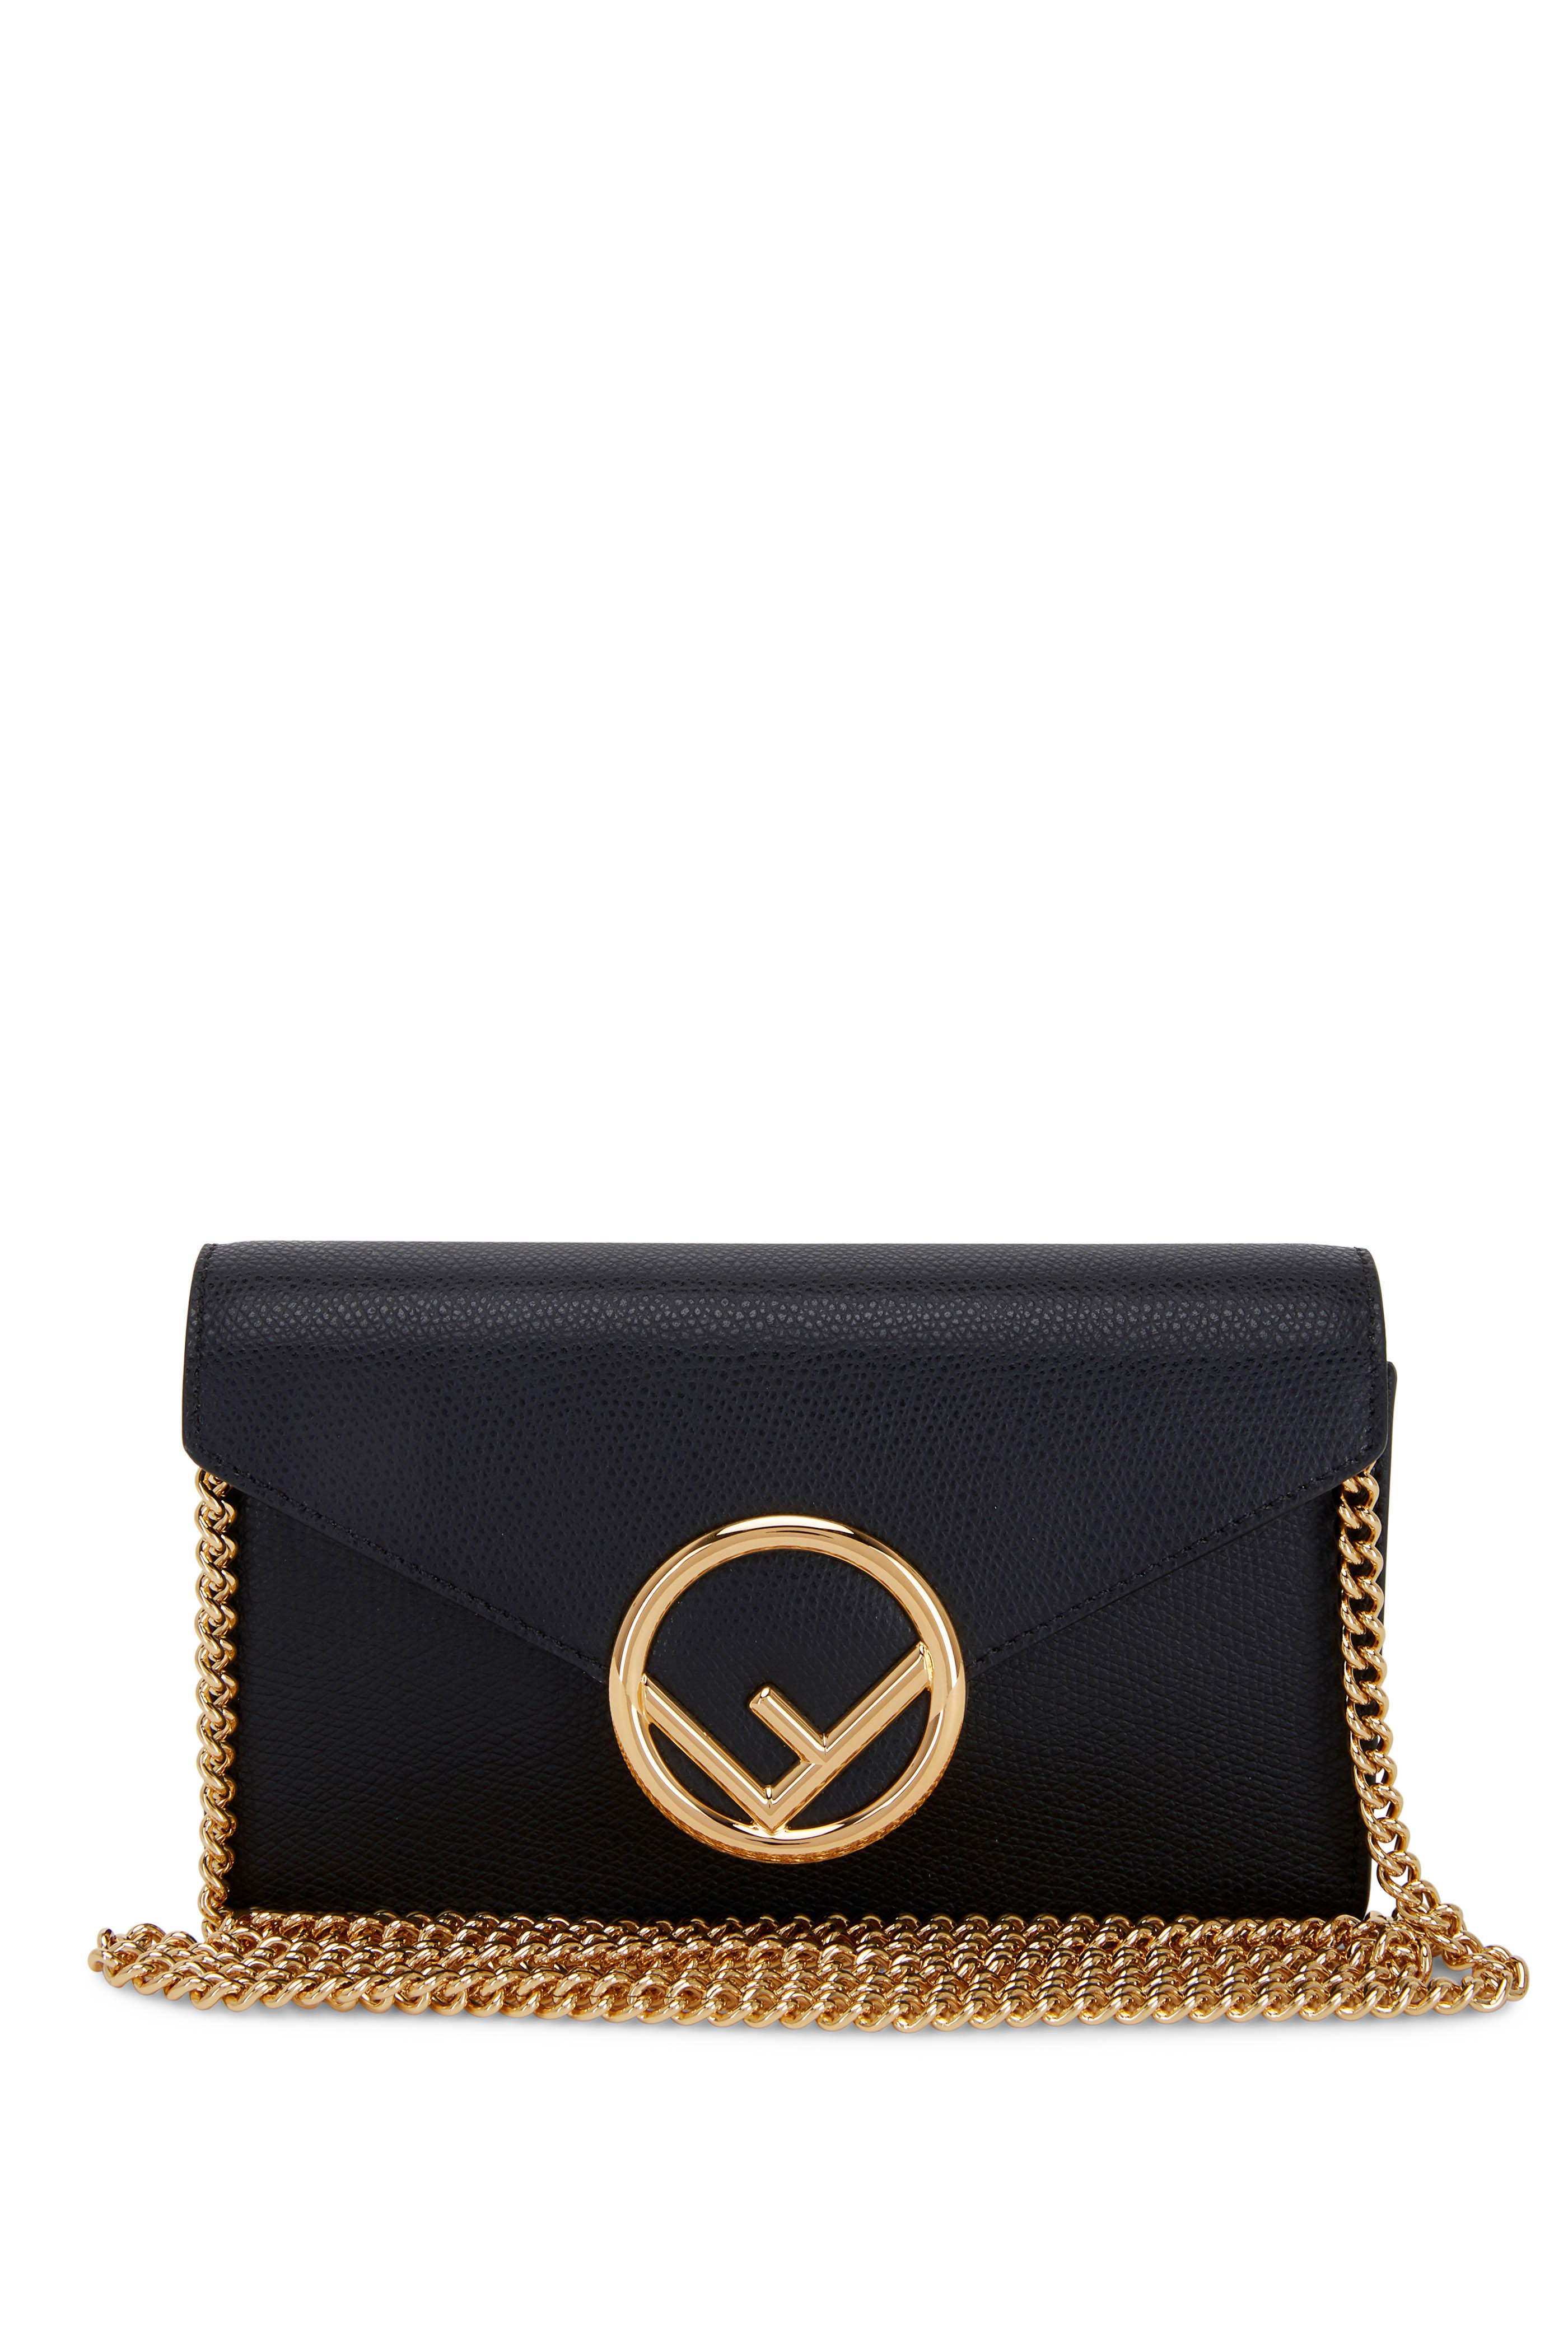 fendi small black purse